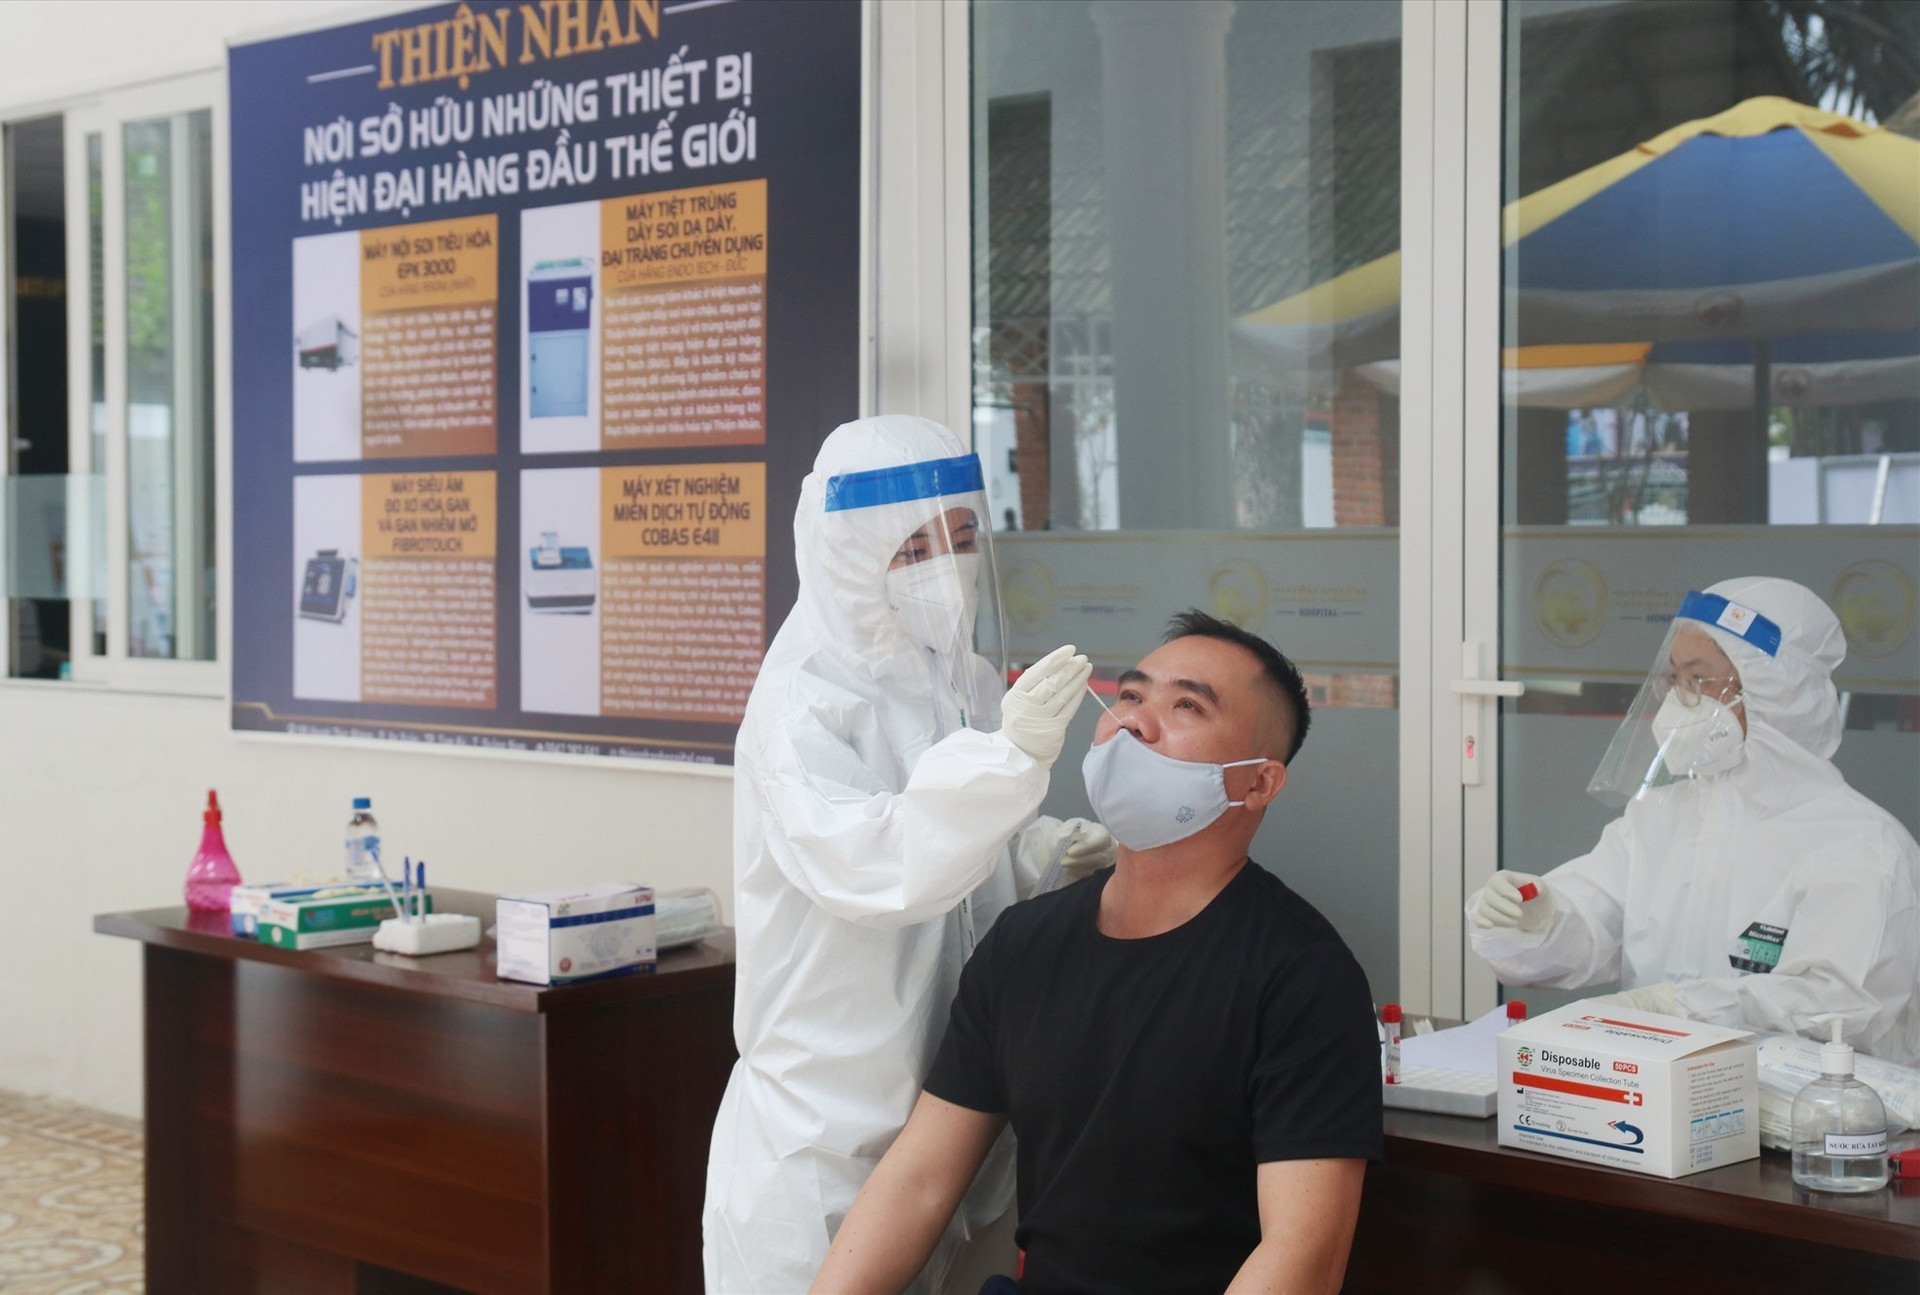 Điểm lấy và nhận mẫu xét nghiệm Covid-19 tại Quảng Nam lấy mẫu cho nhân viên đang làm việc tại đây. Ảnh: X.H